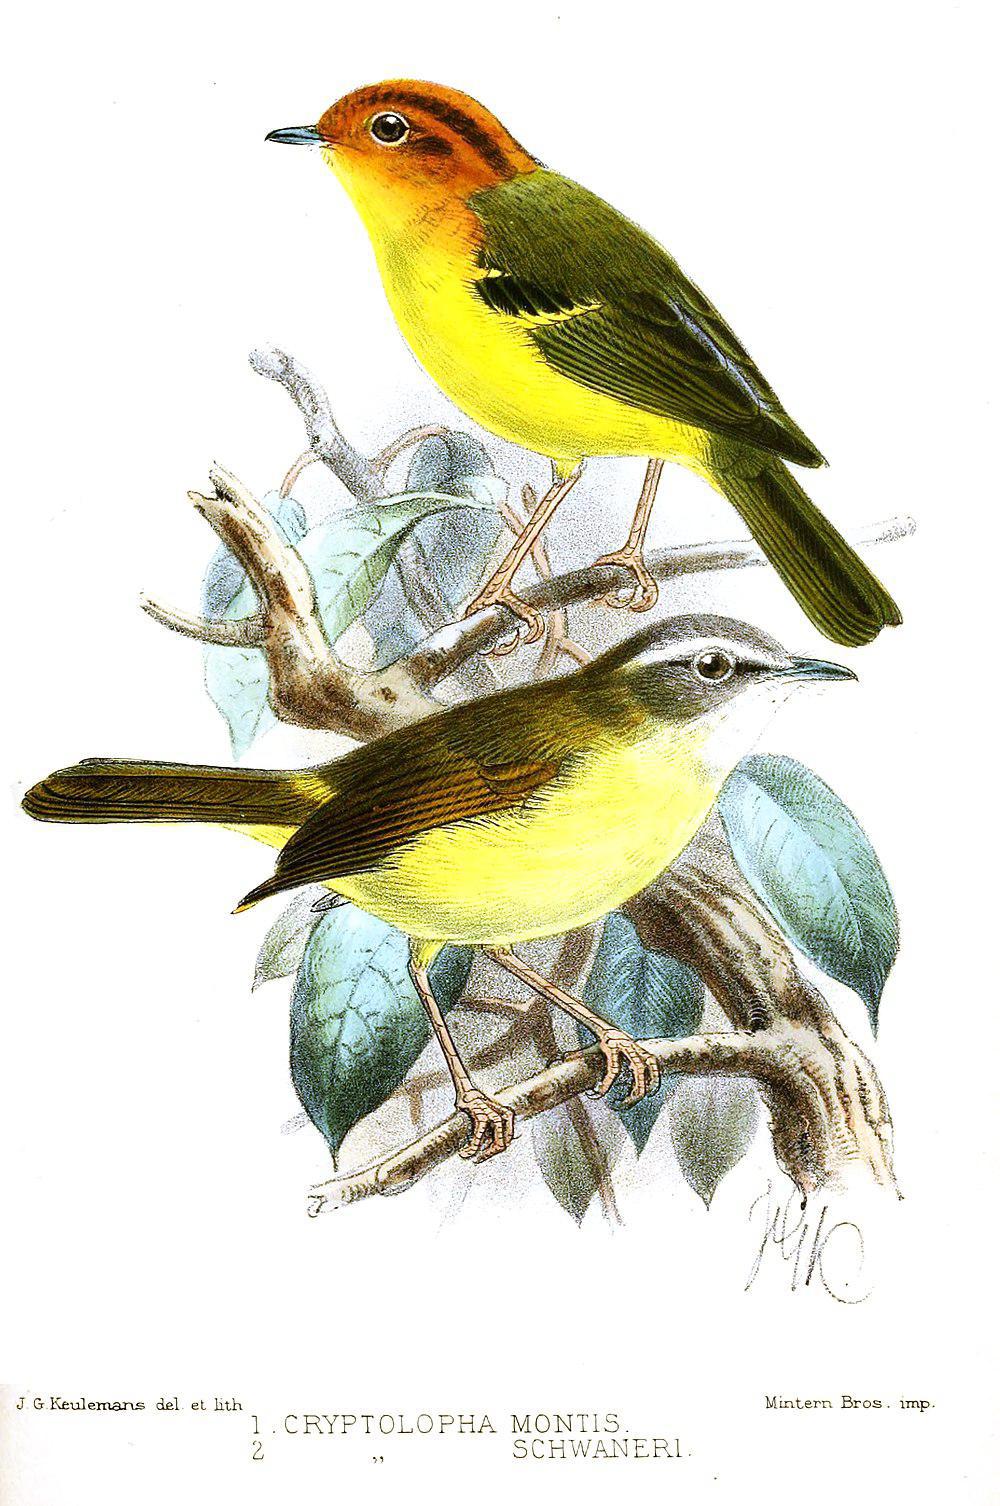 黄胸鹟莺 / Yellow-breasted Warbler / Phylloscopus montis